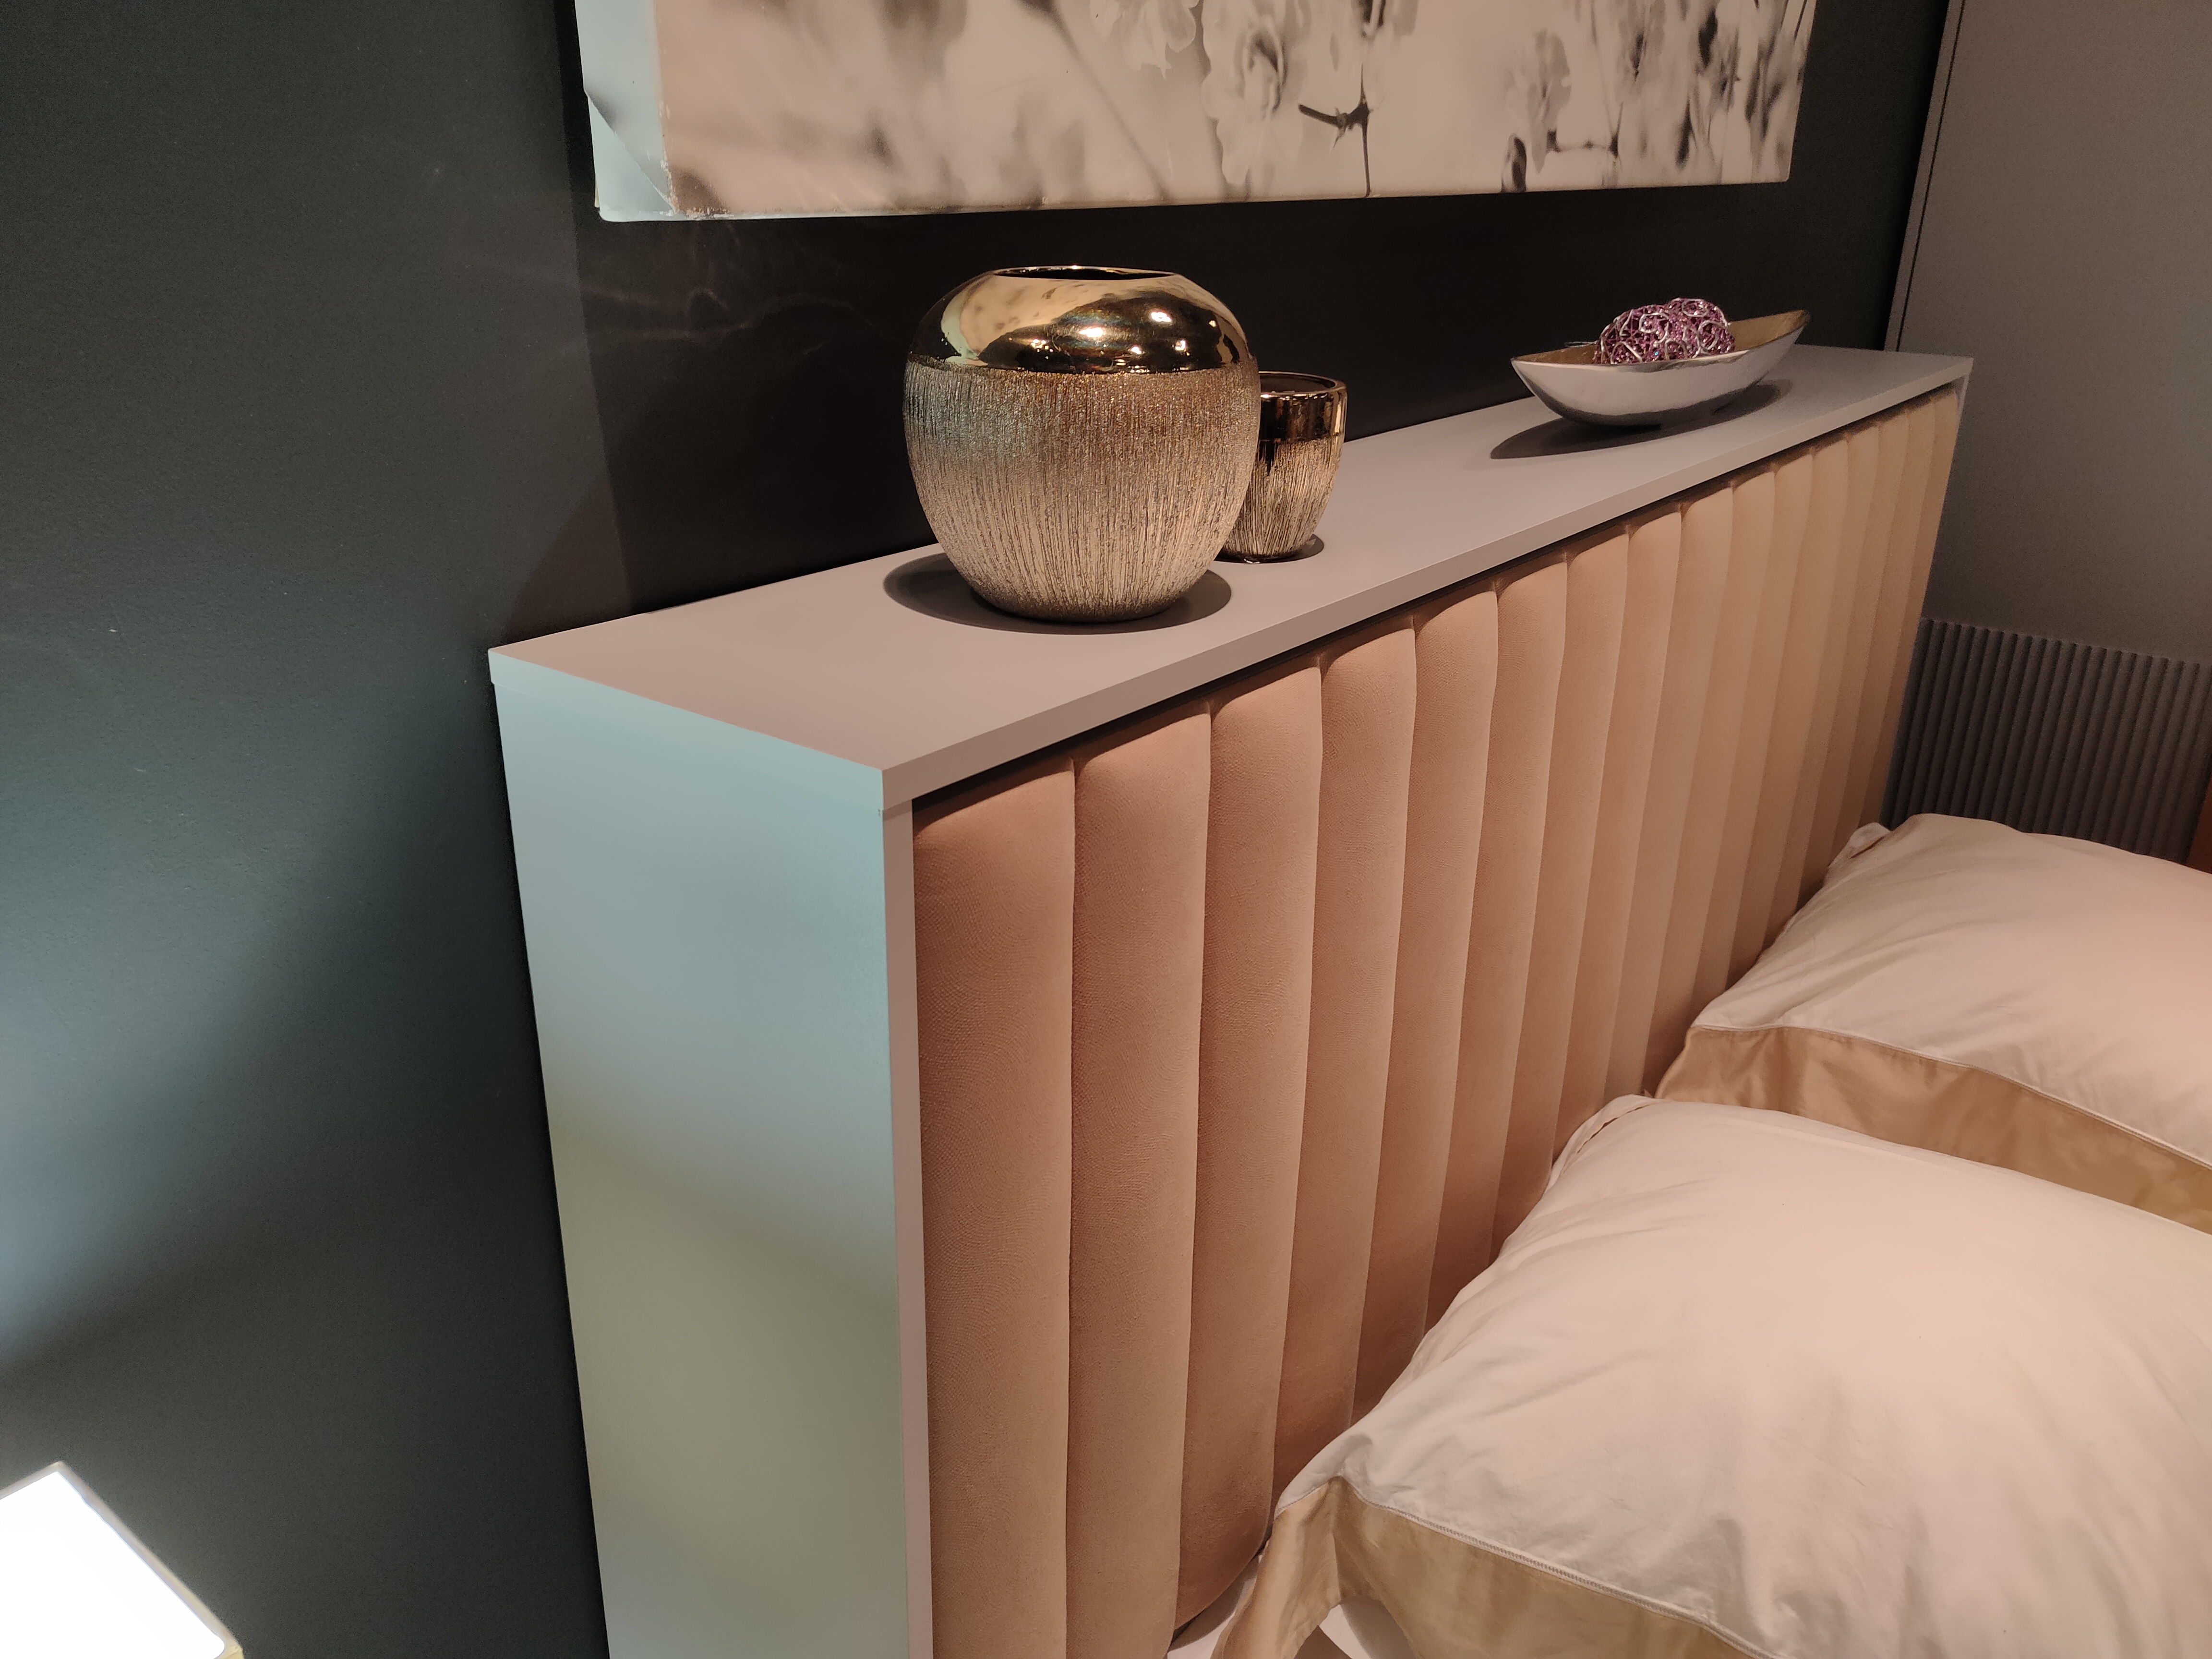 Современный дизайн-проект интерьера спальни: сколько стоит?